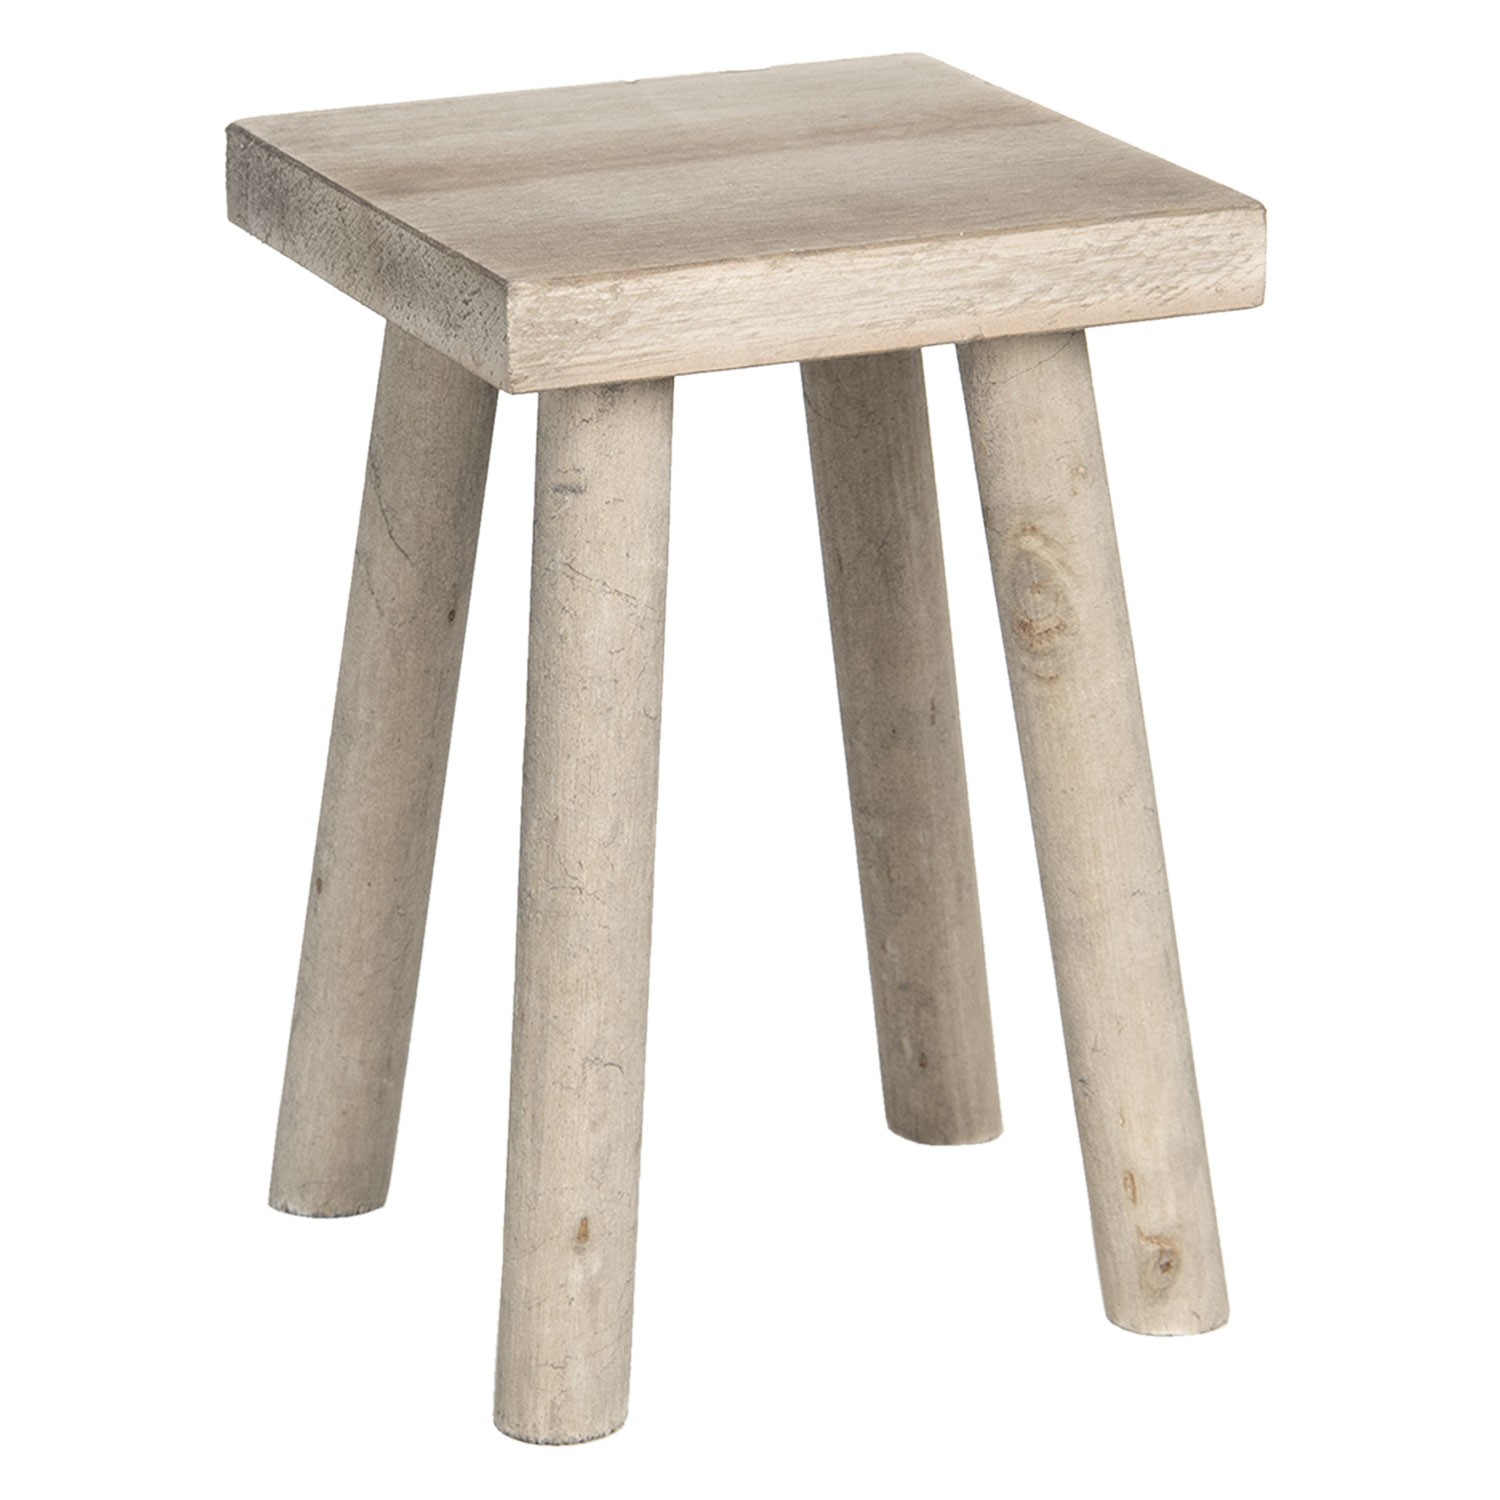 Dekorační stolička ze světlého dřeva více antik - 18*18*26 cm 6H1953 antik